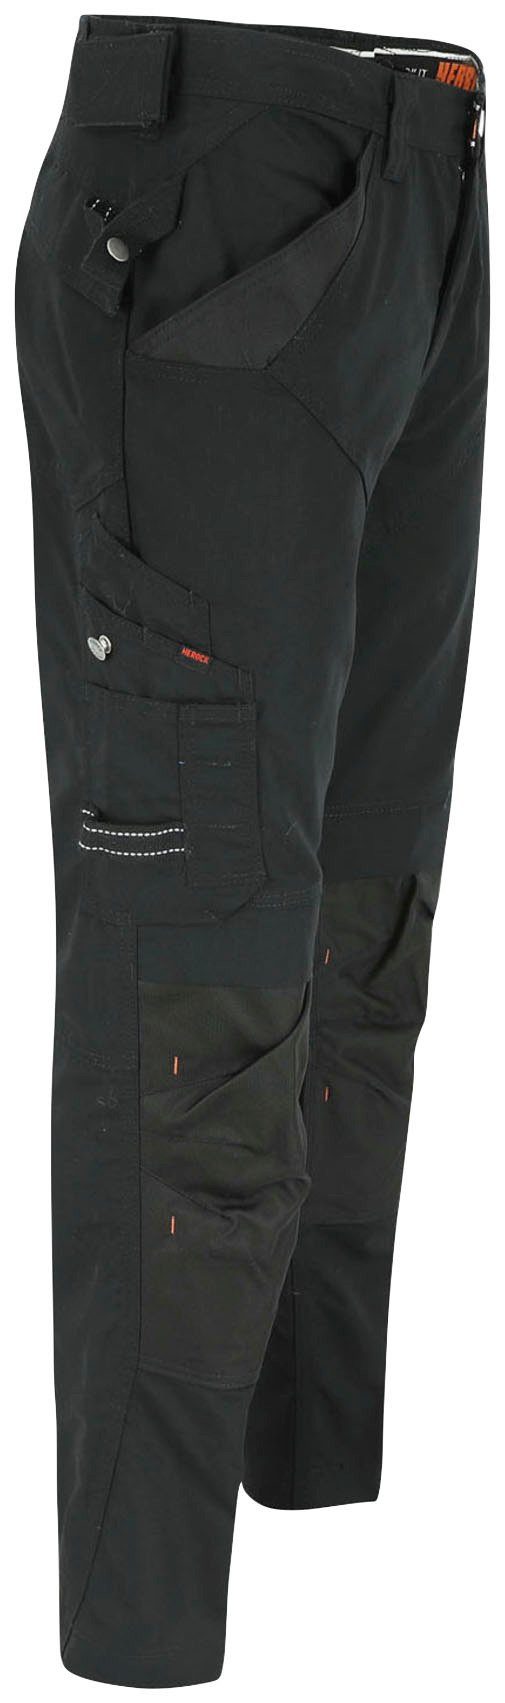 Herock bequem Hose Arbeitshose & leicht Apollo Taschen Wasserabweisend Regelbarer - - schwarz - 8 Bund